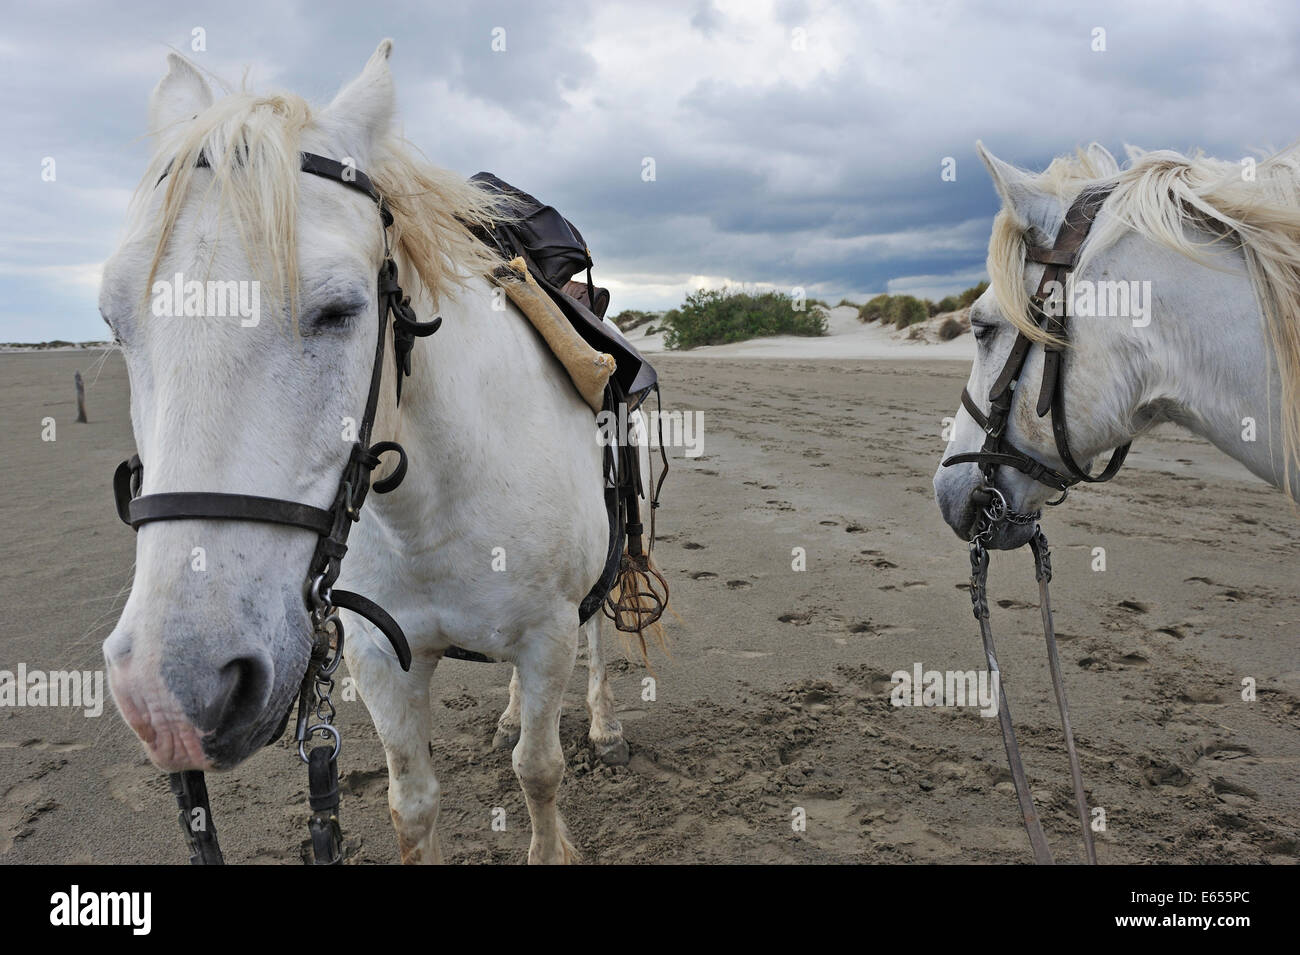 Chevaux Camargue cheval blanc sur la plage, Camargue, France, Europe Banque D'Images